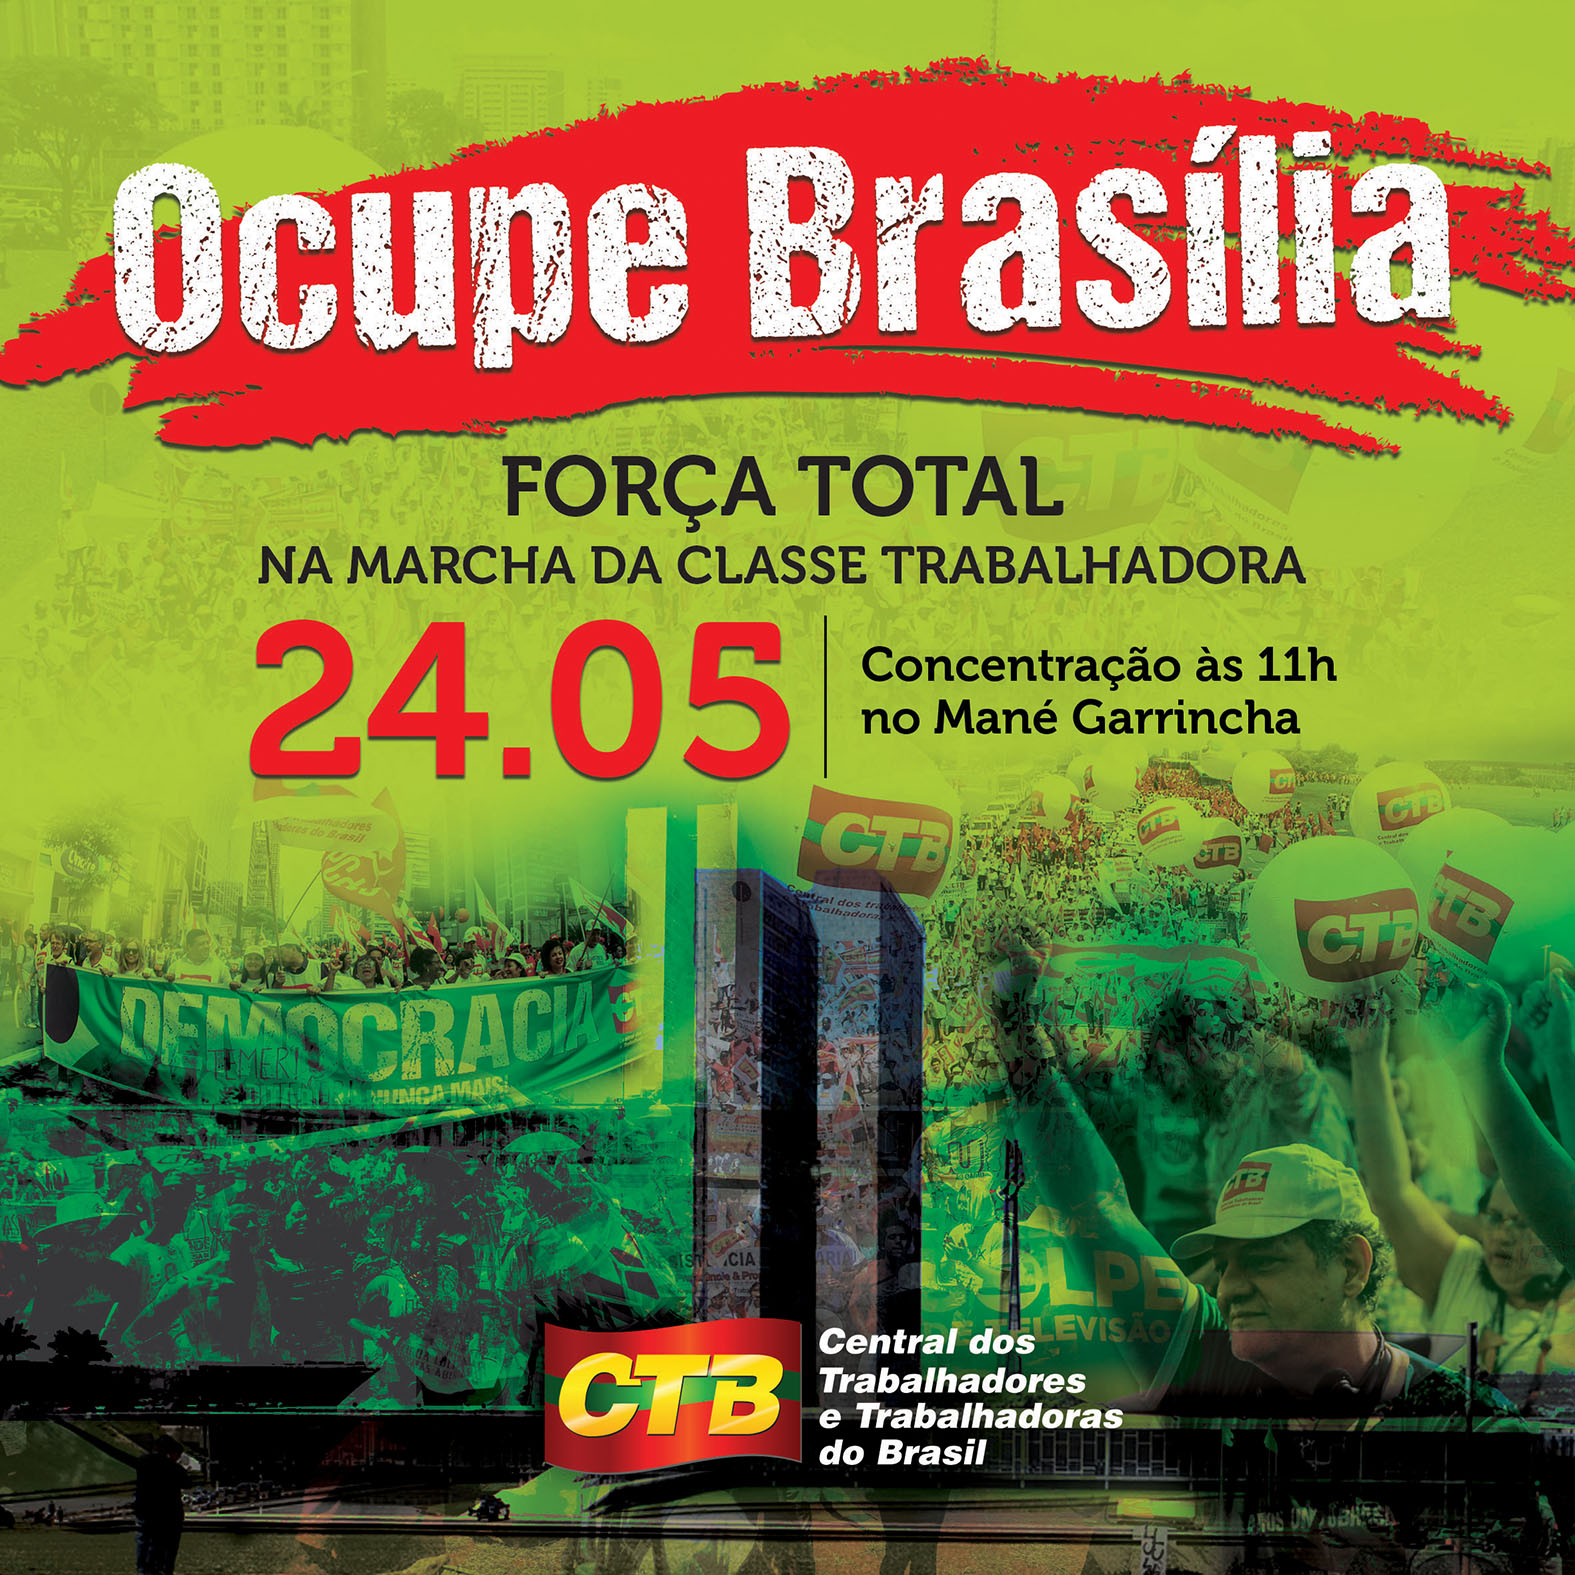 Ocupa brasilia 240517 cartaz